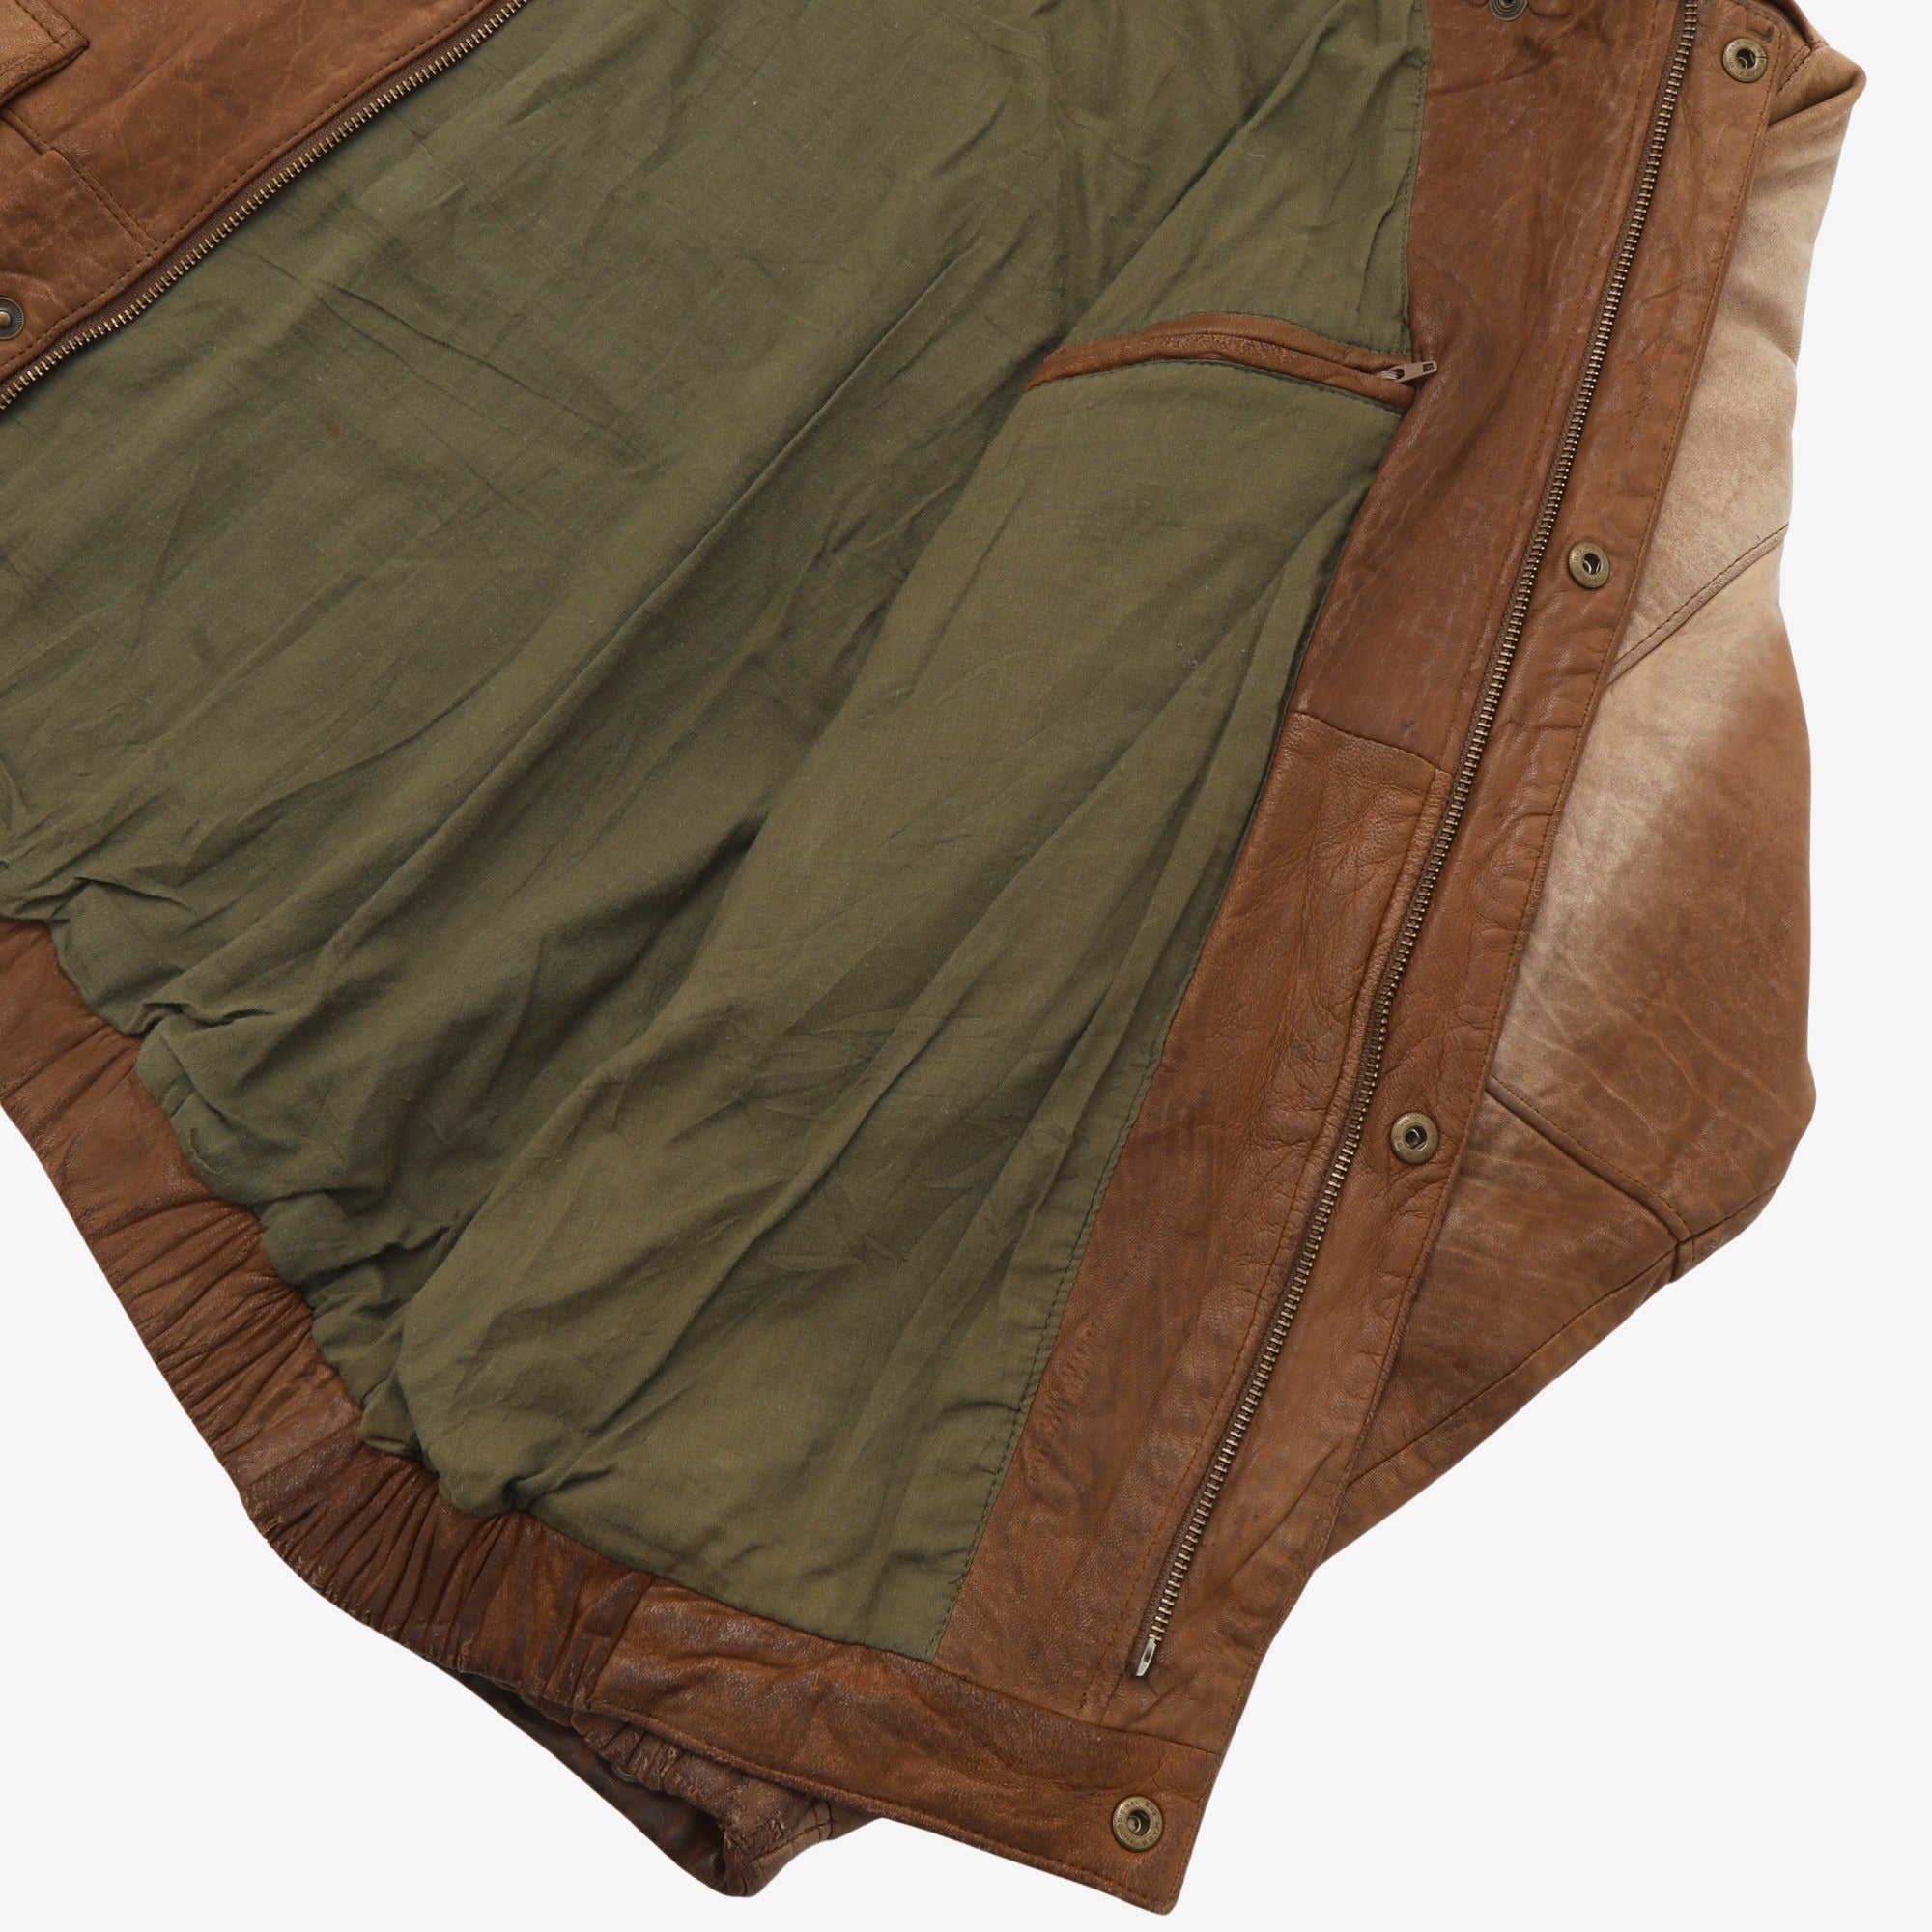 Vintage Leather Flight Jacket